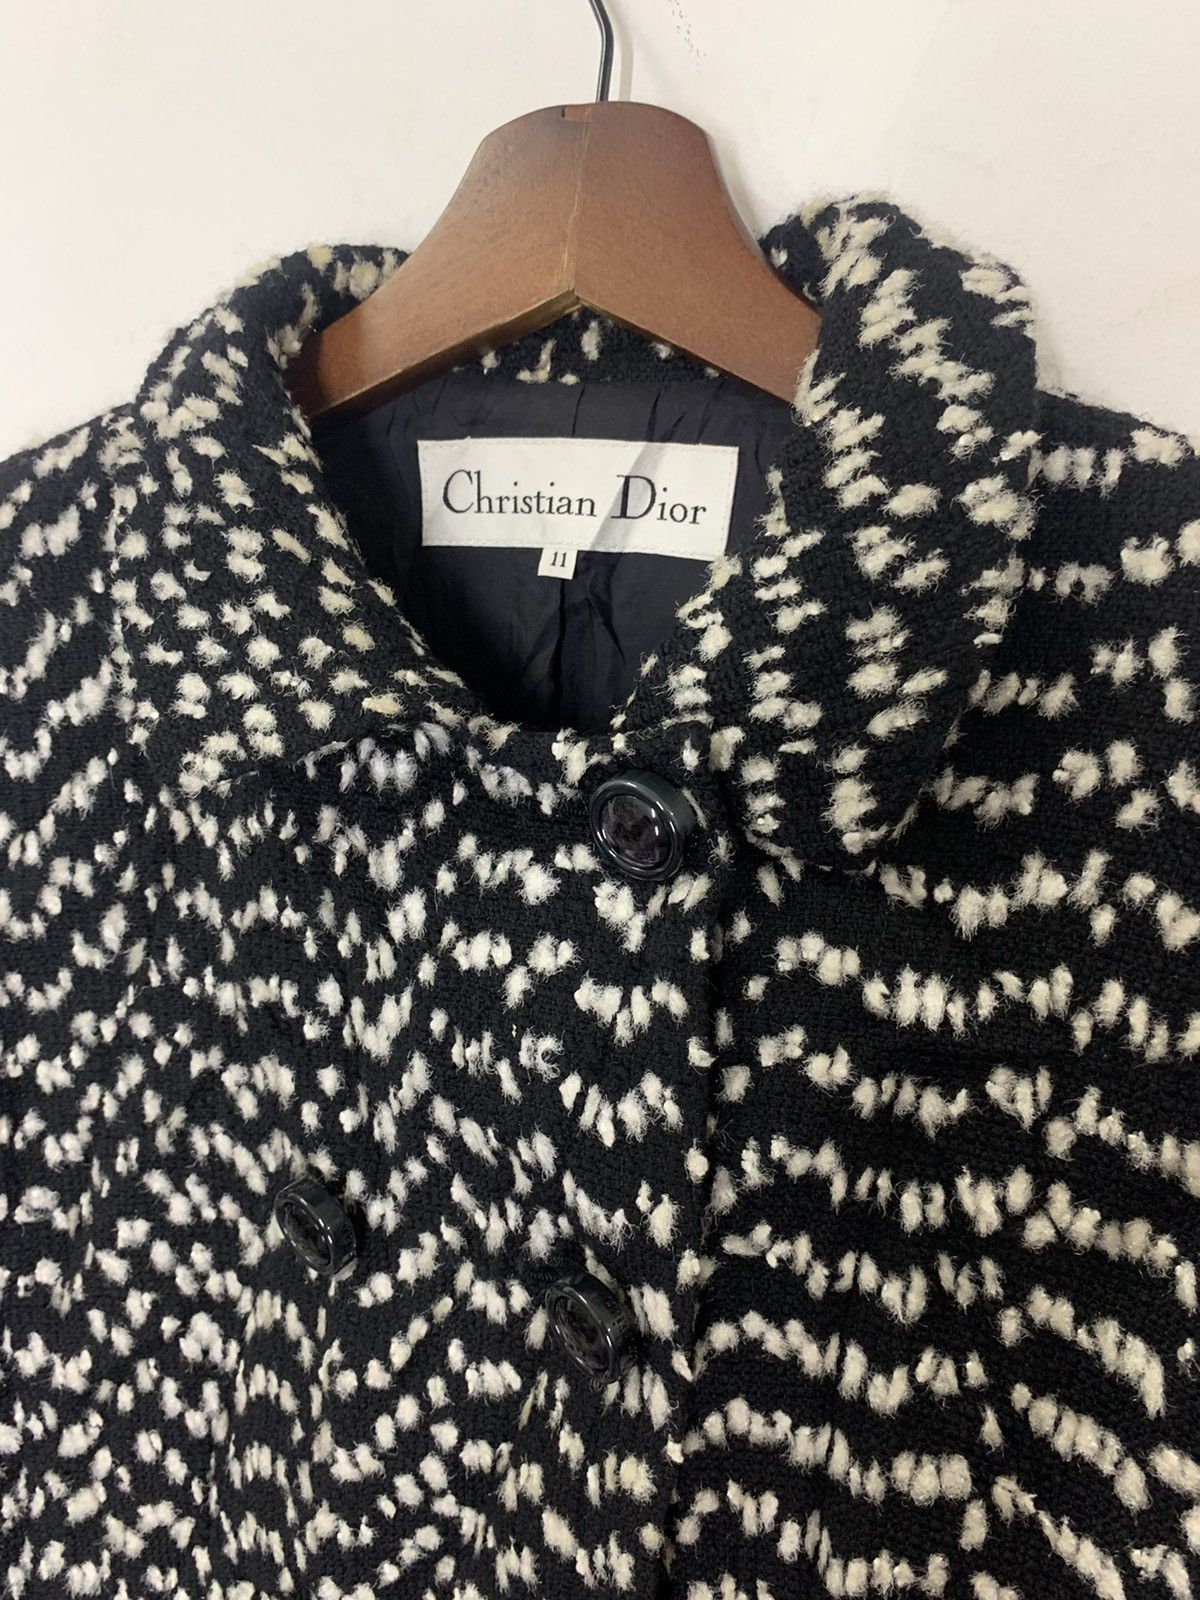 Christian Dior Monsieur - Vintage CHRISTIAN DIOR Tweed Wool Jacket - 6